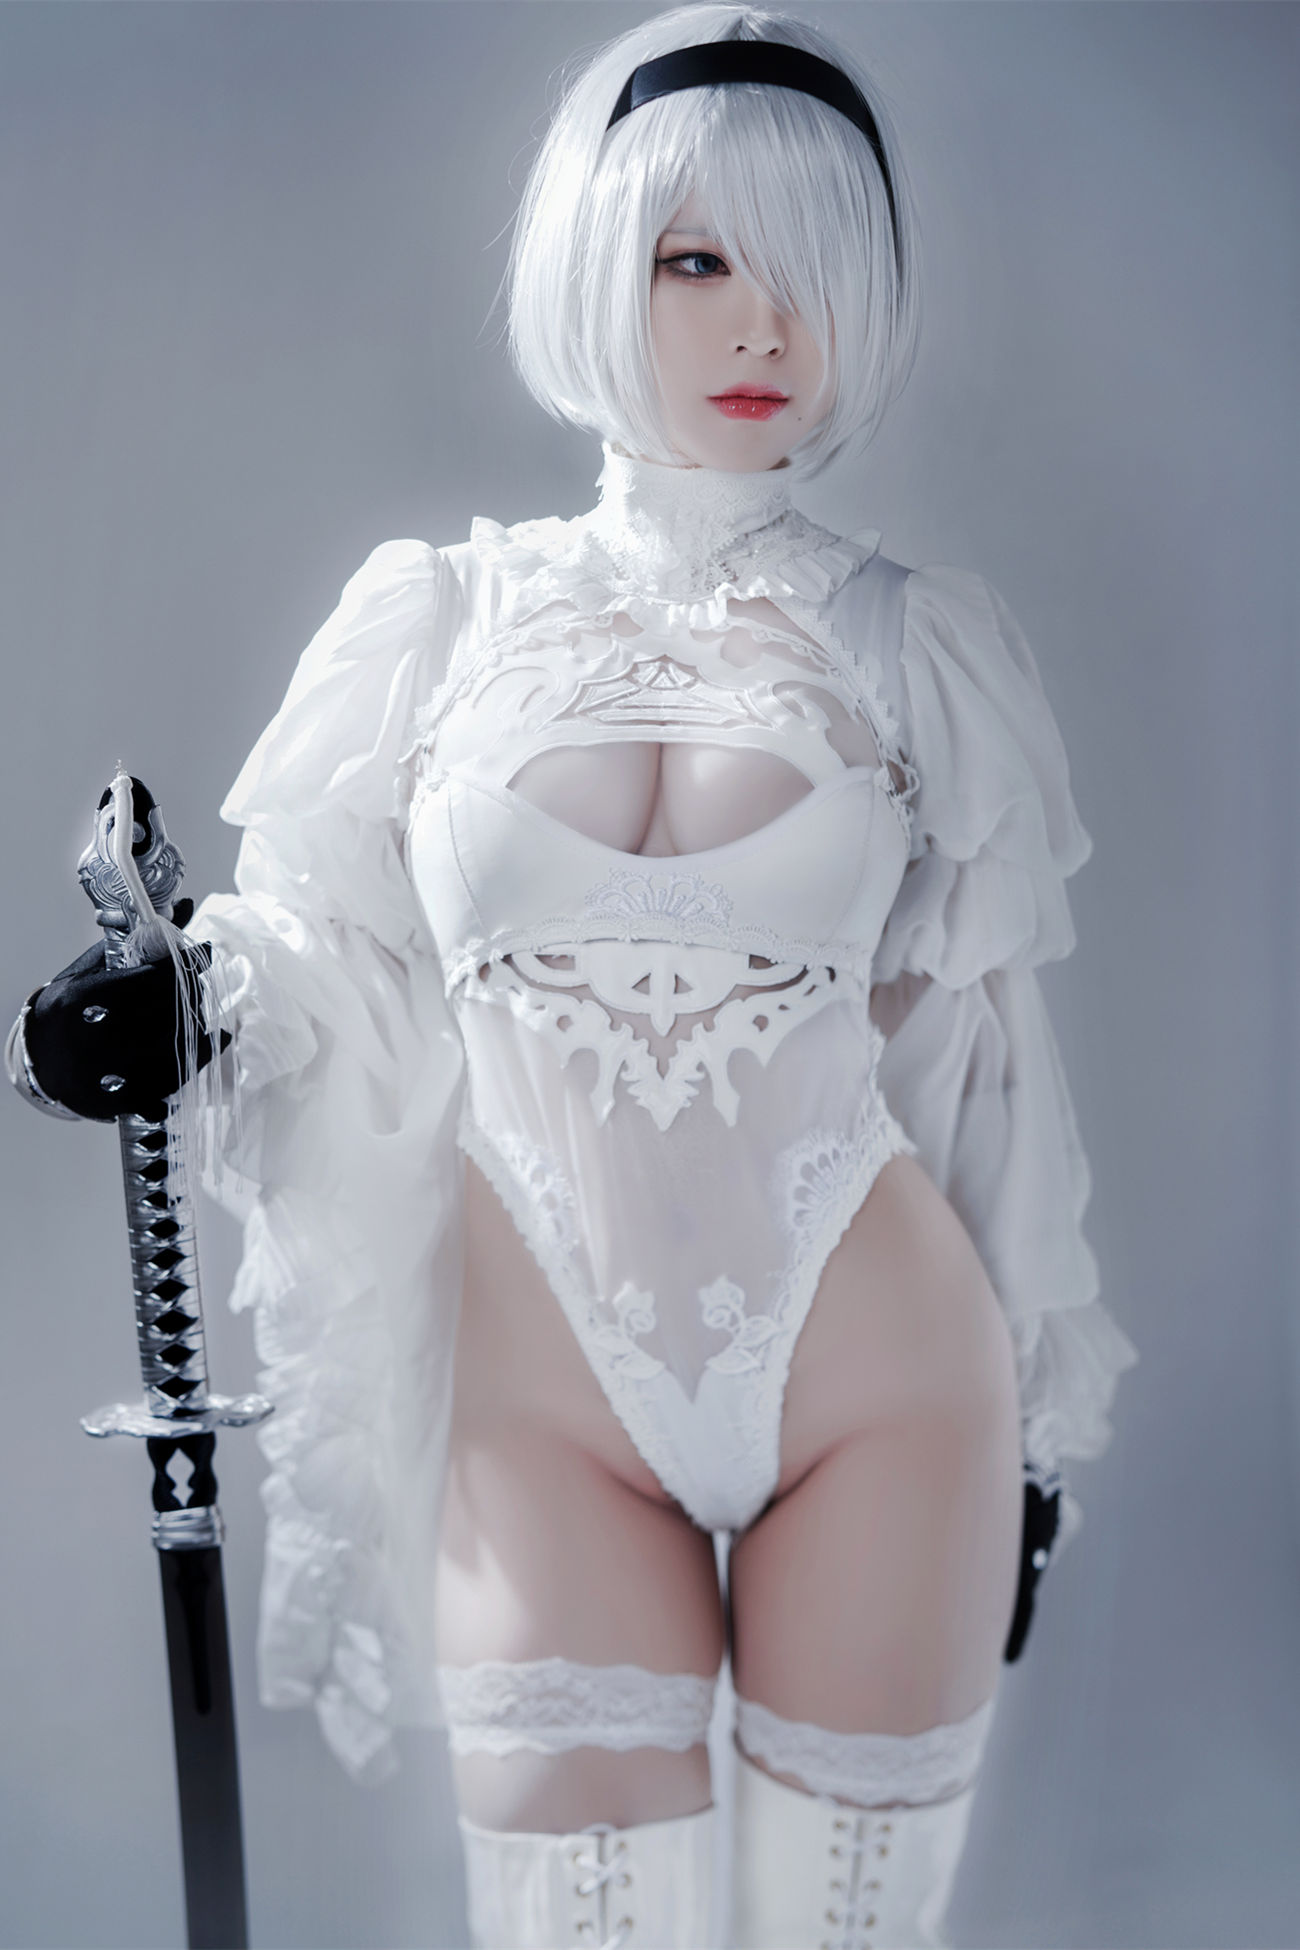 微博美少女半半子Cosplay性感写真Automataヨルハ二号B型 白いドレス (1)